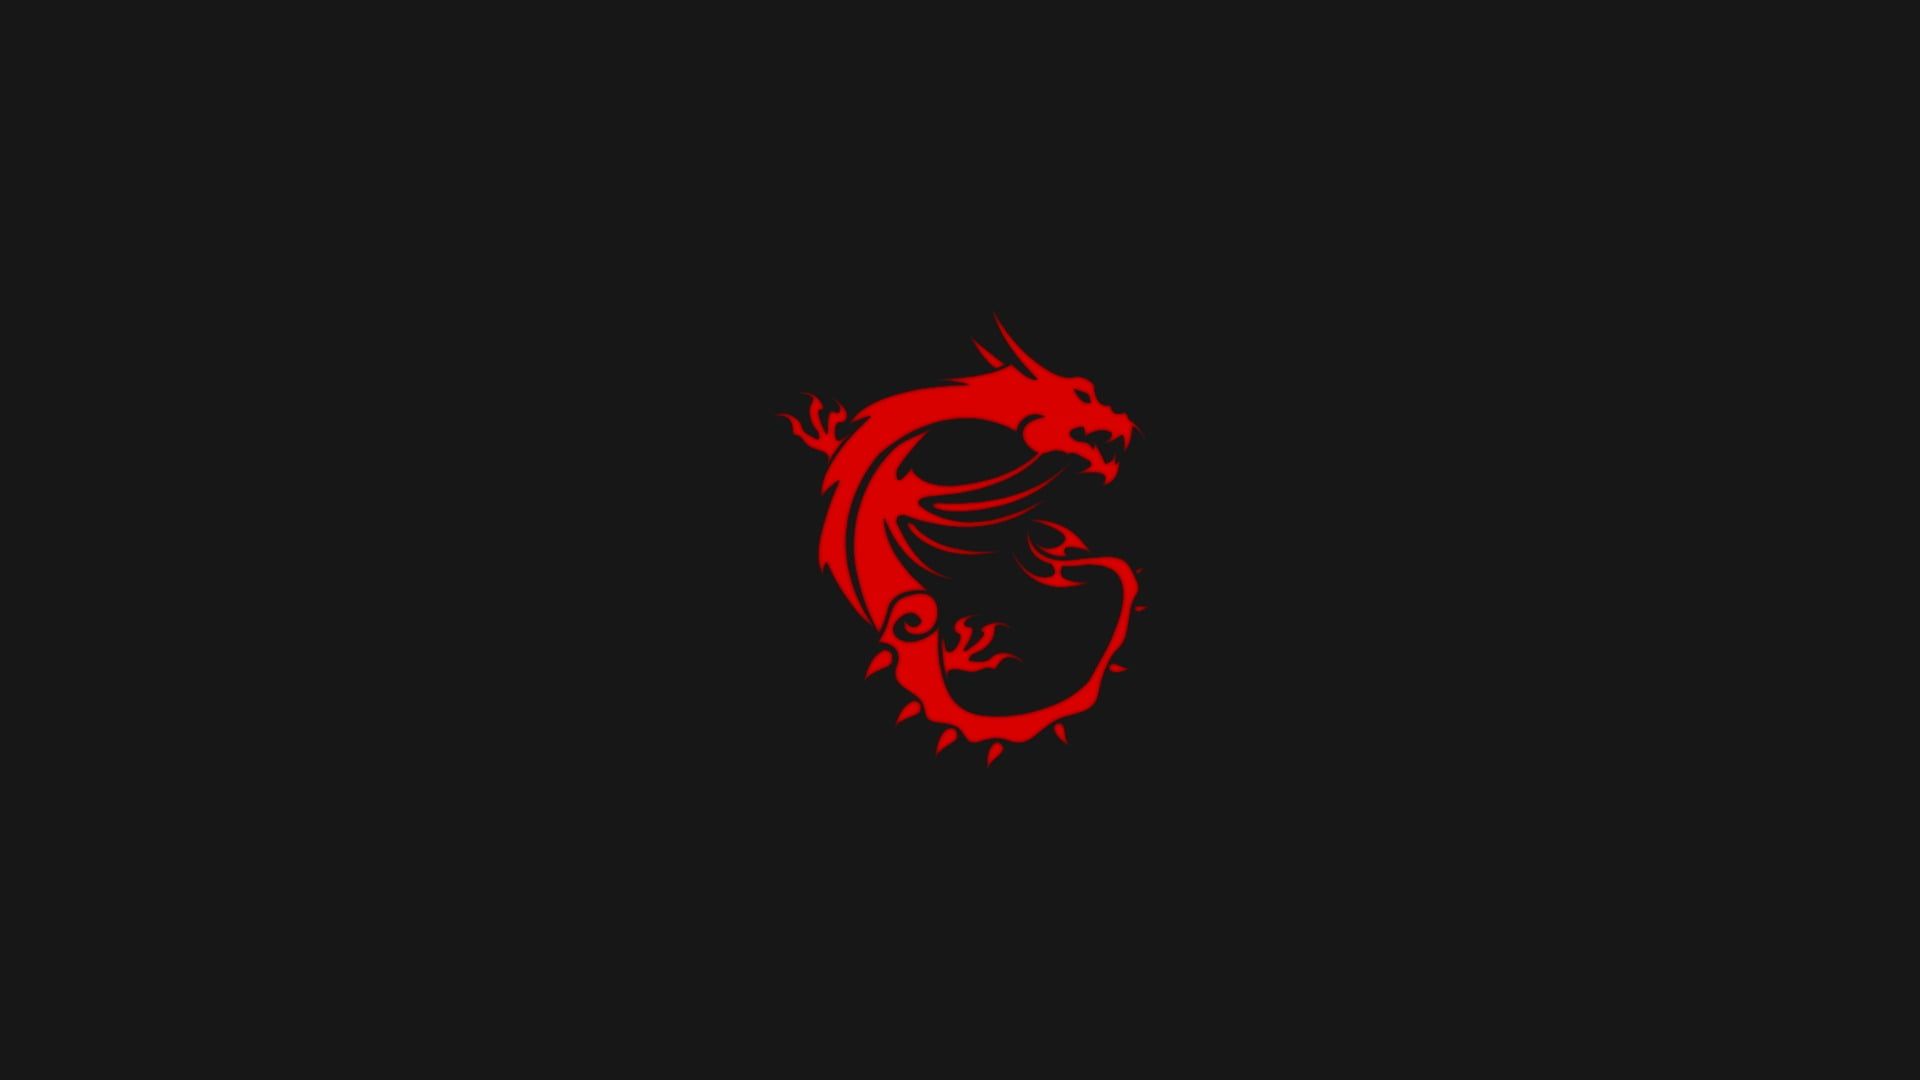 red dragon digital wallpaper #MSI #simple #minimalism #computer #logo #dragon P #wallpaper #hdwallpaper #deskto. Computer logo, Art logo, Dragon illustration